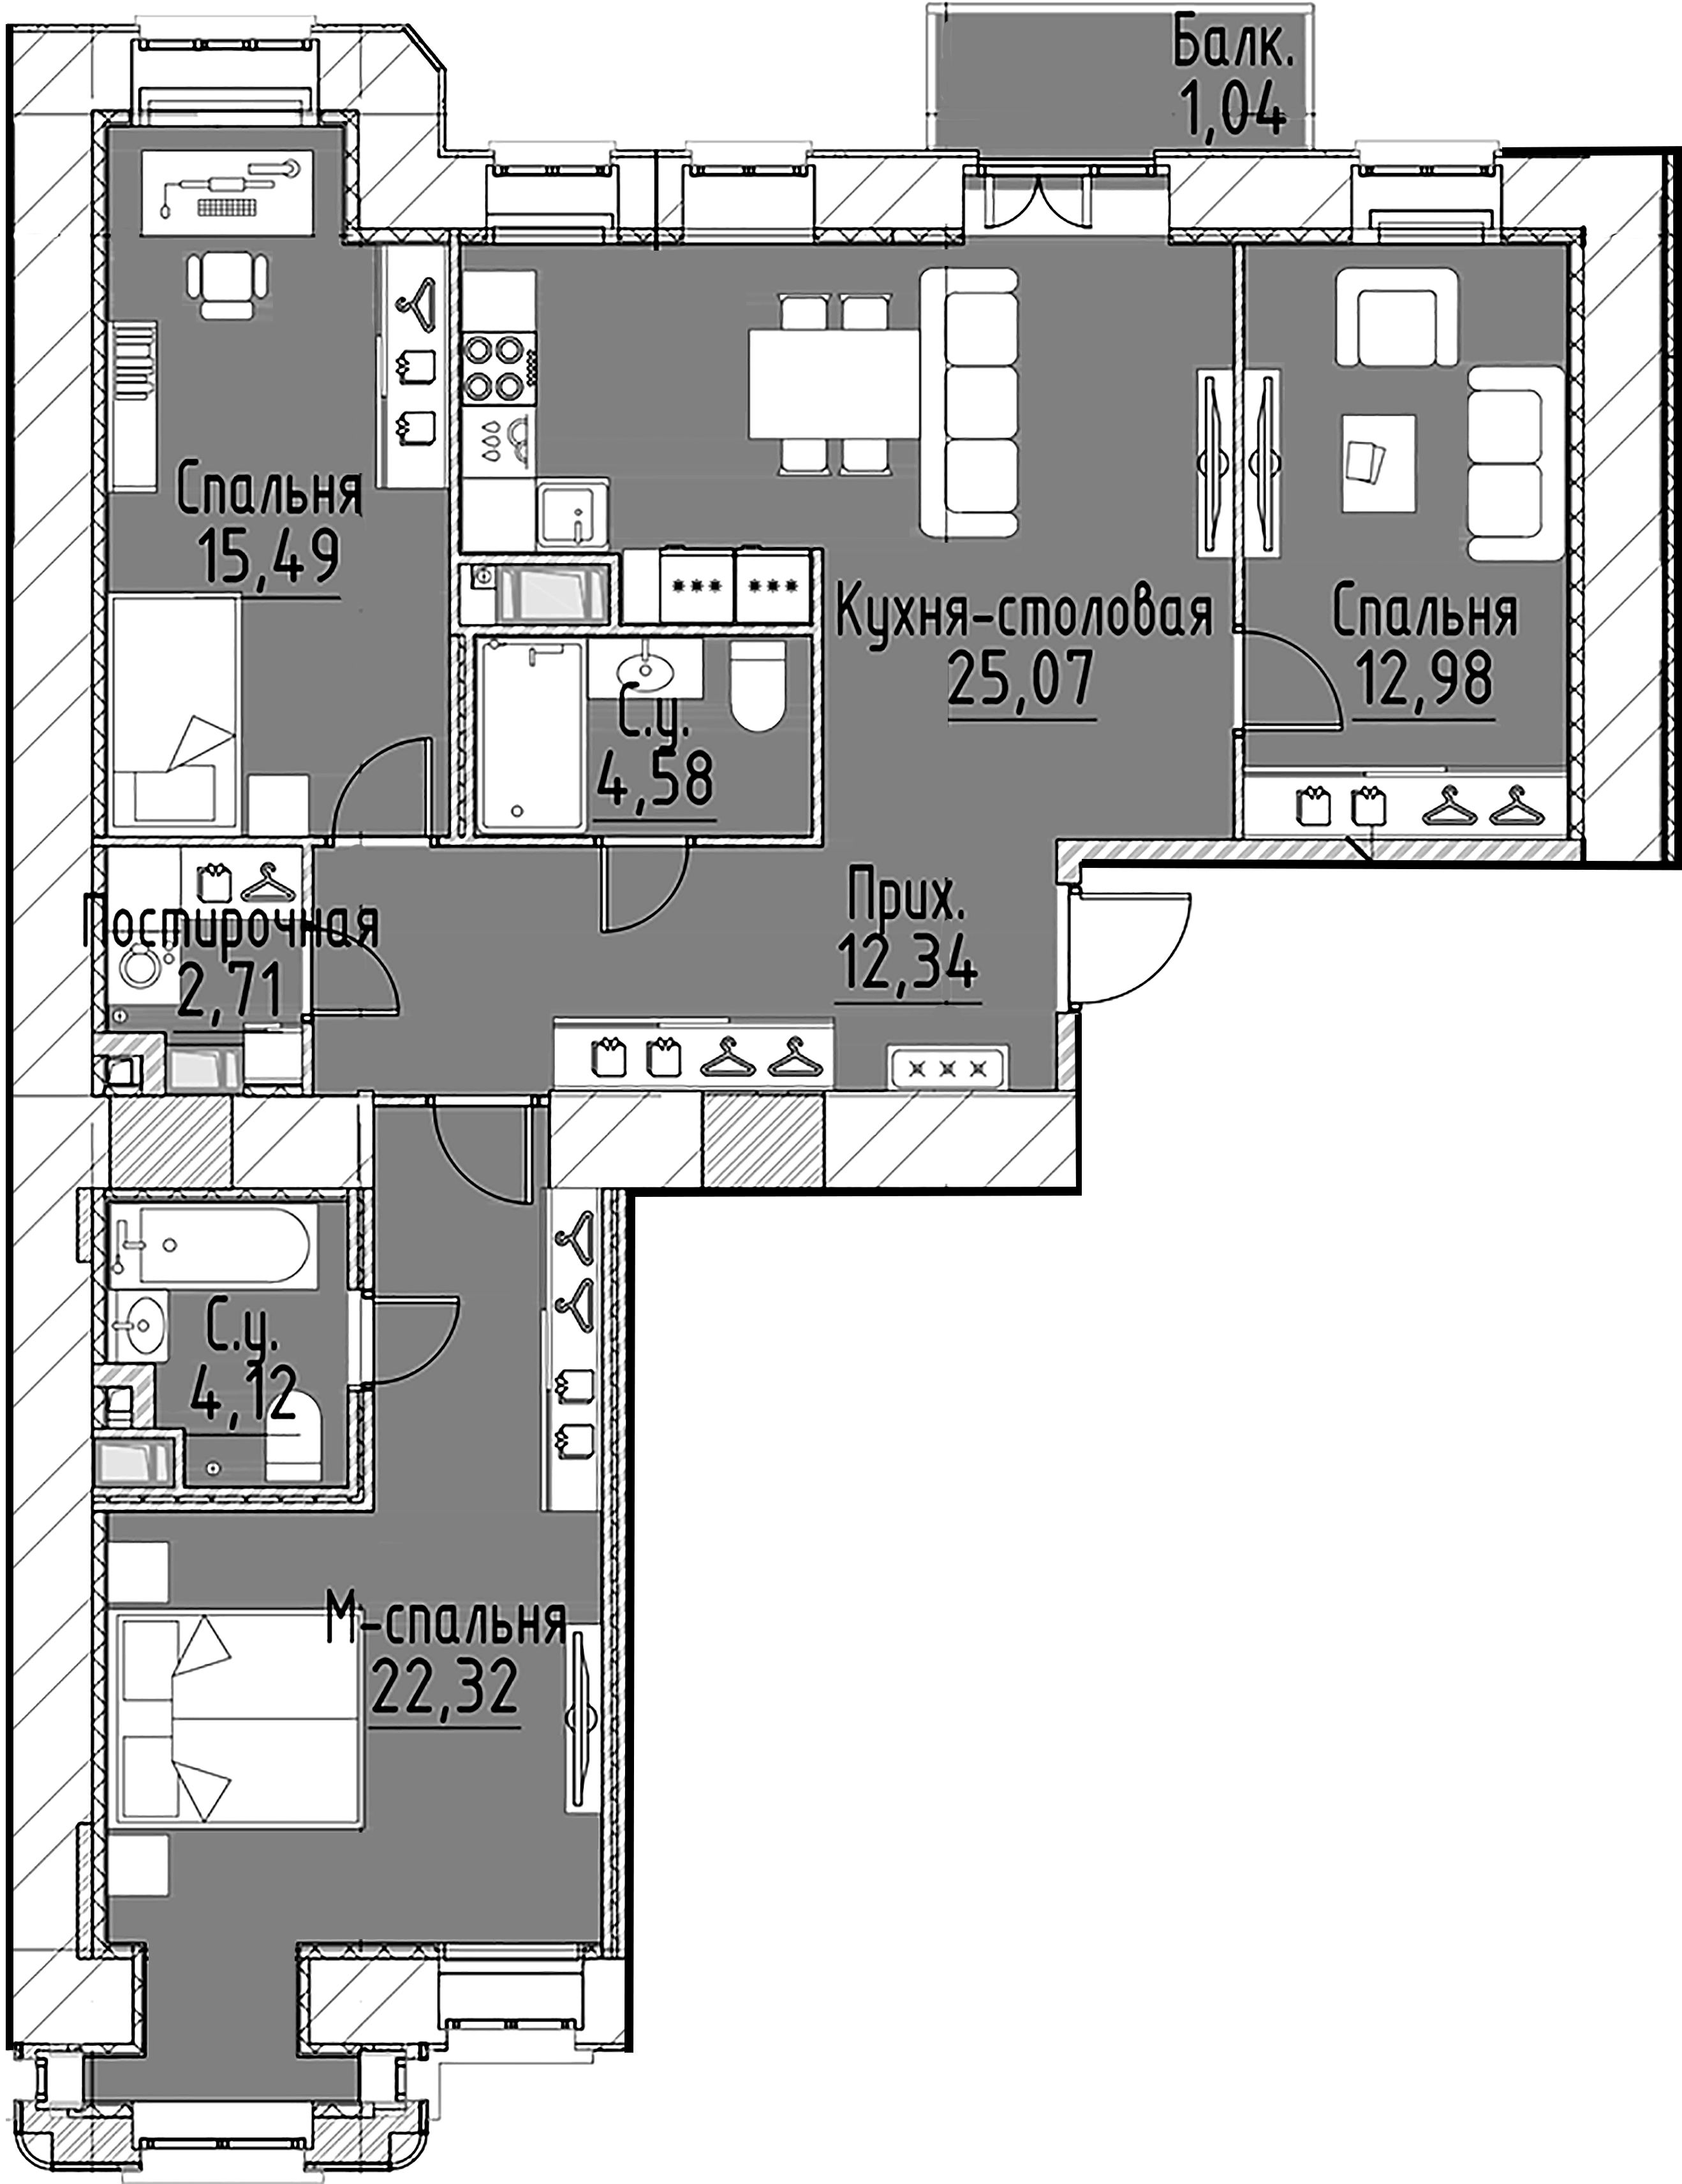 3-комнатная квартира, 99.61 м²; этаж: 4 - купить в Санкт-Петербурге